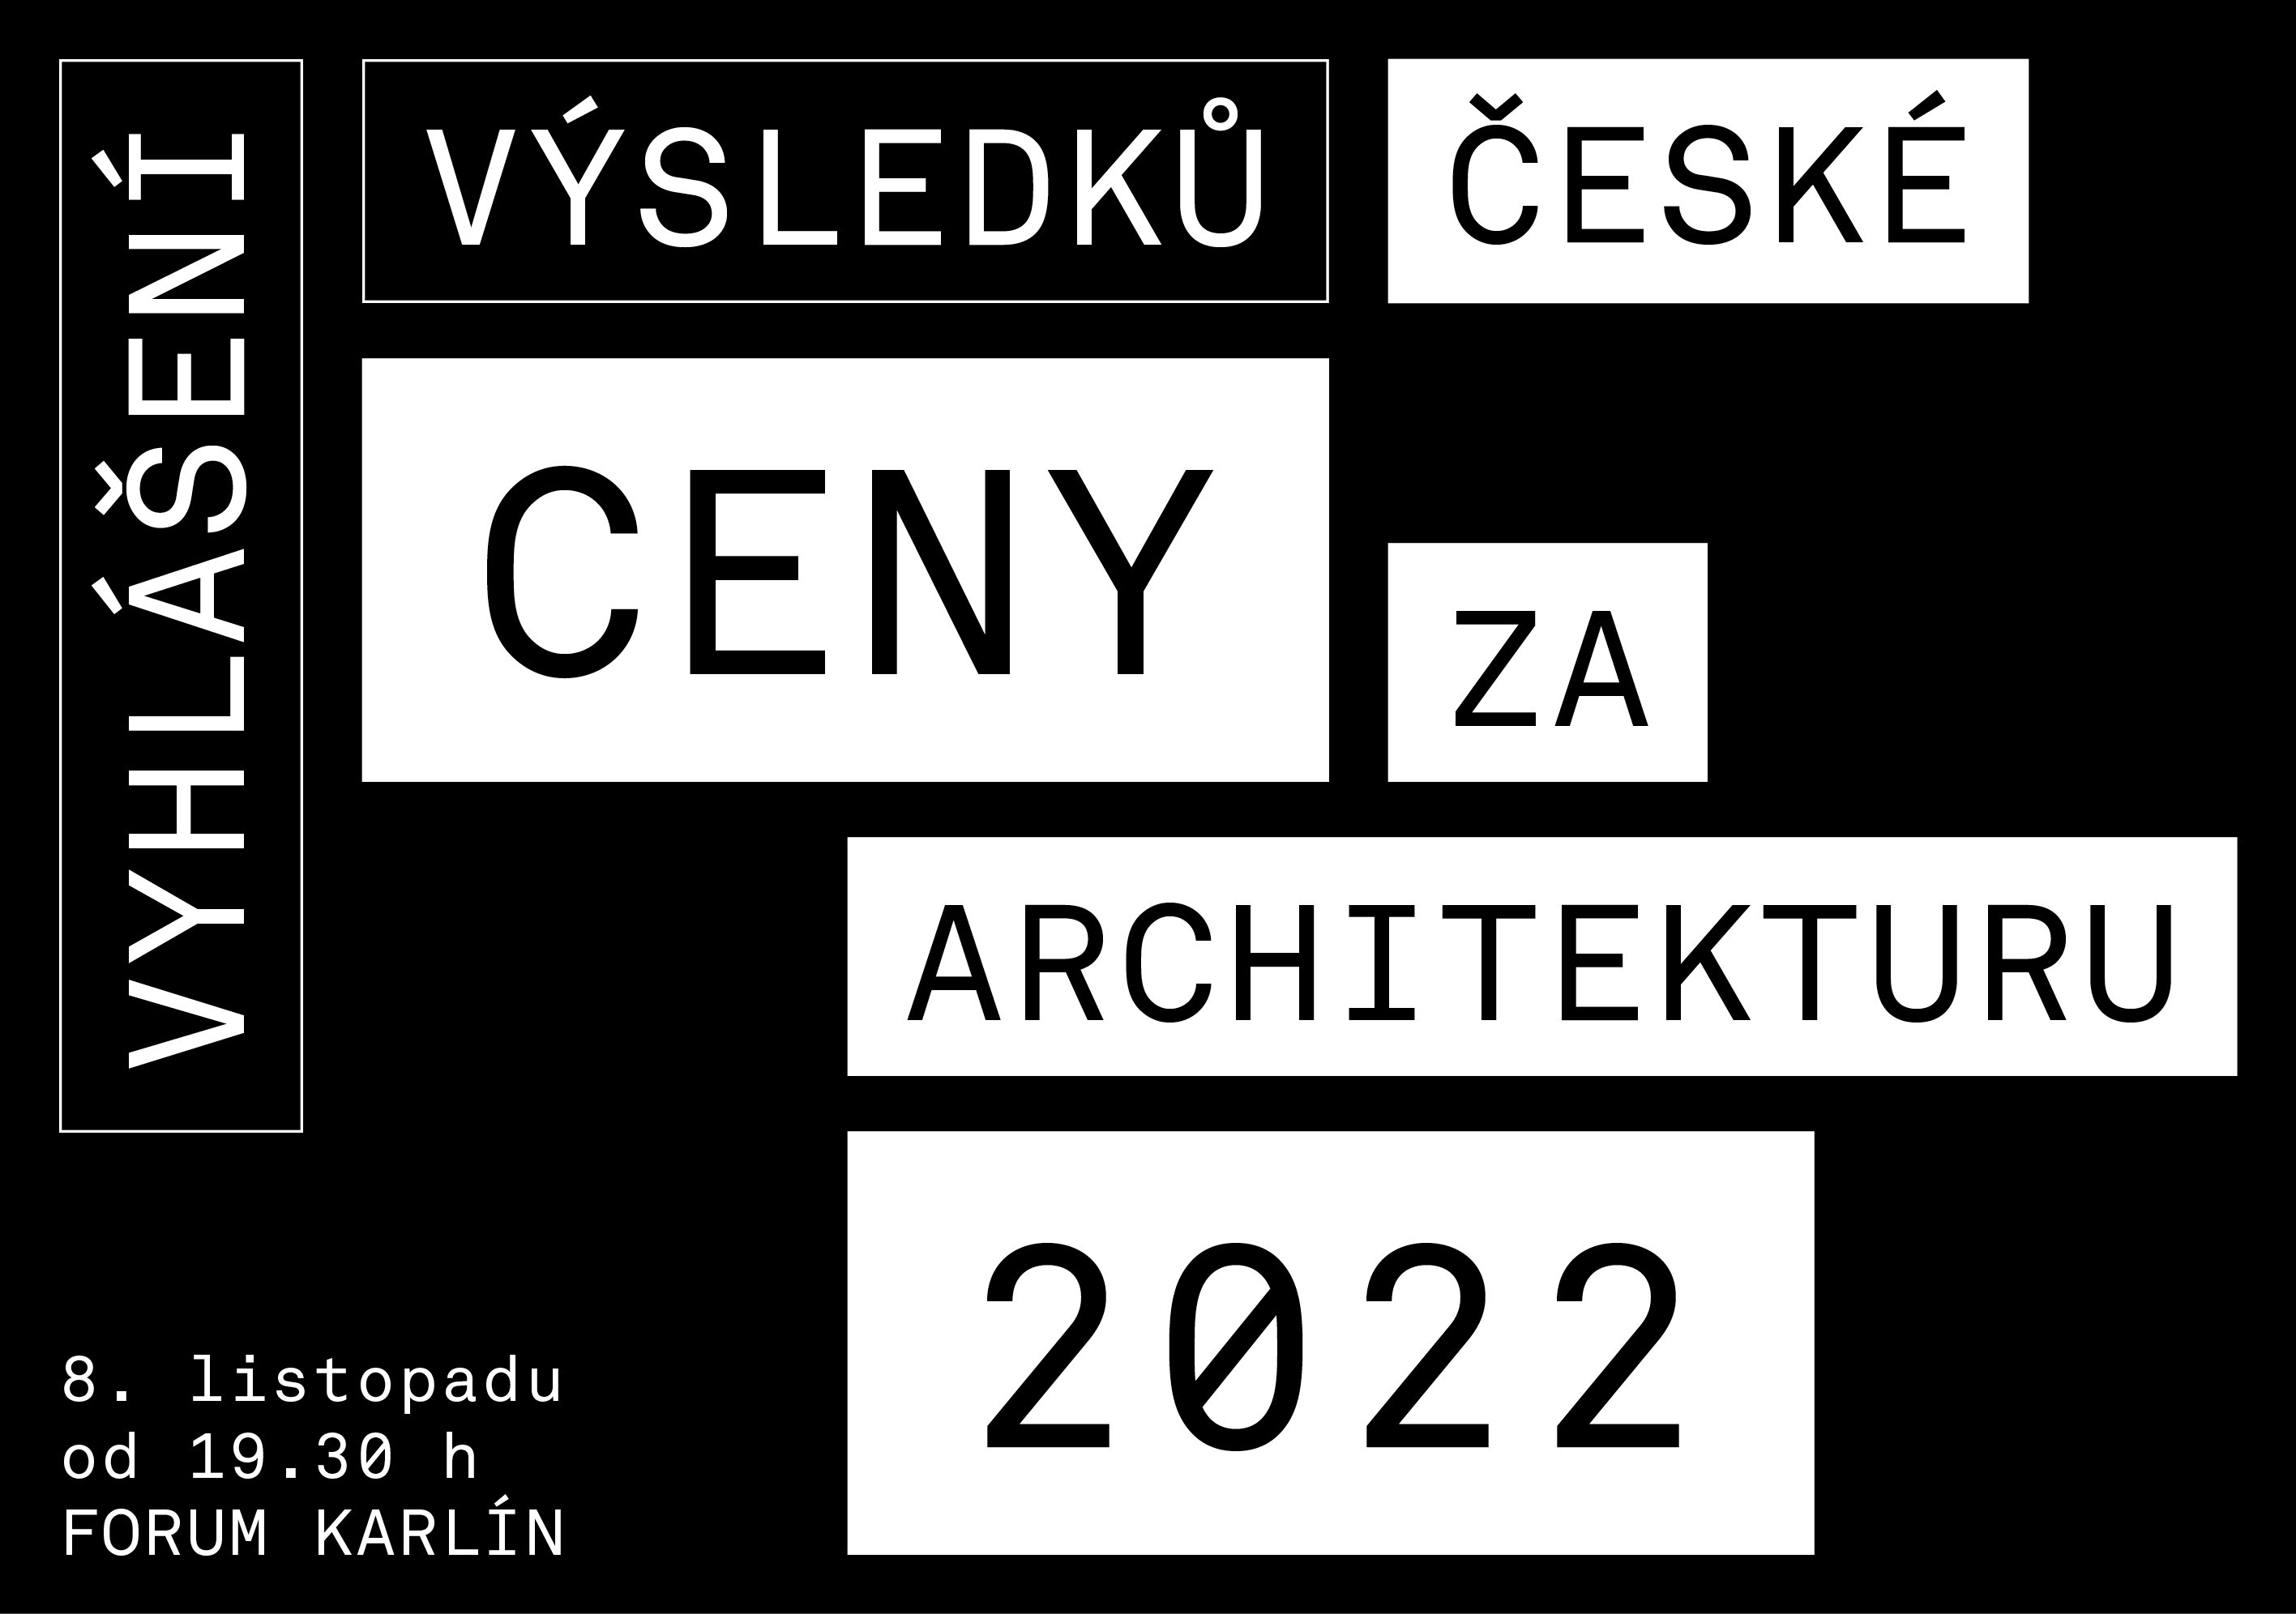 Galavečer České ceny za architekturu 2022